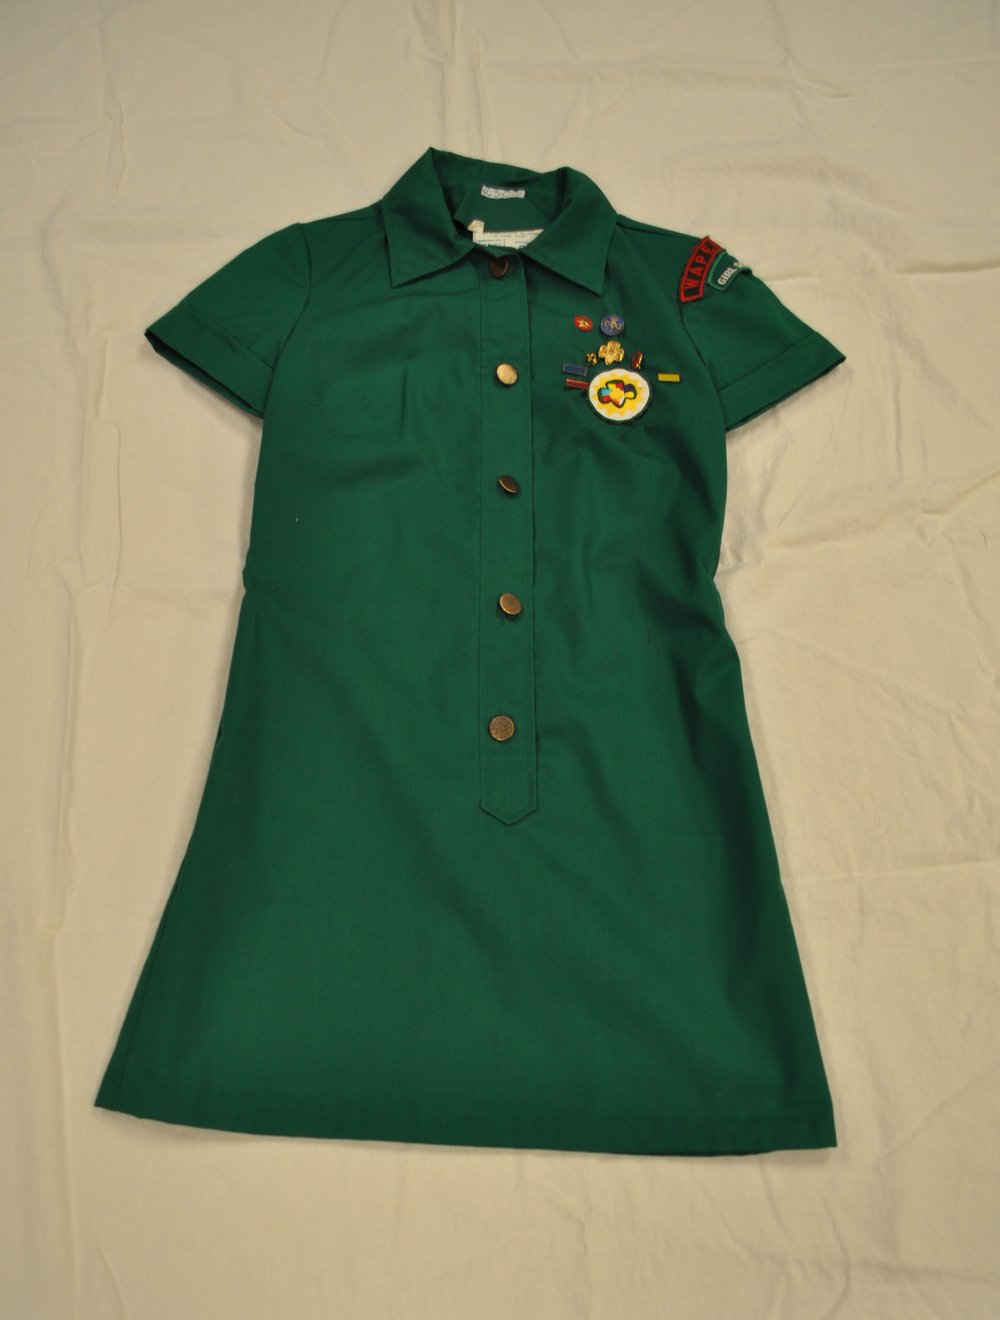 Figure 9: early 1970s uniform worn by Julie Nauman Foster